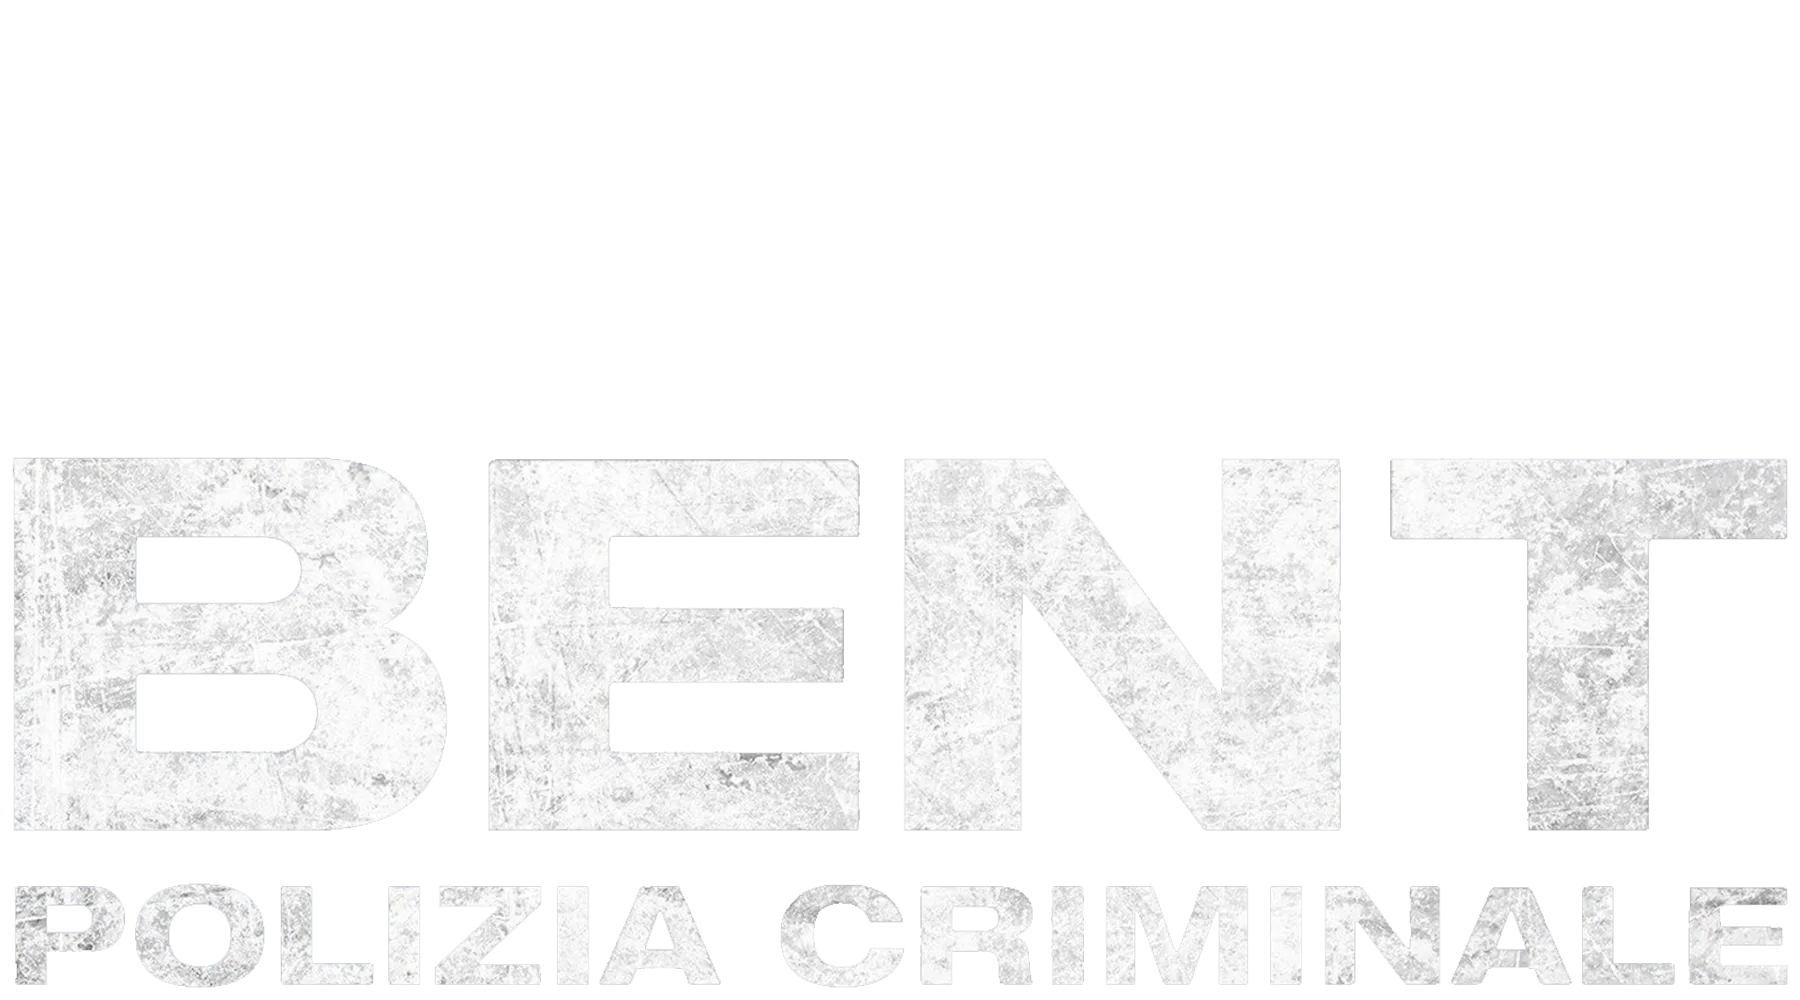 Bent - Polizia criminale